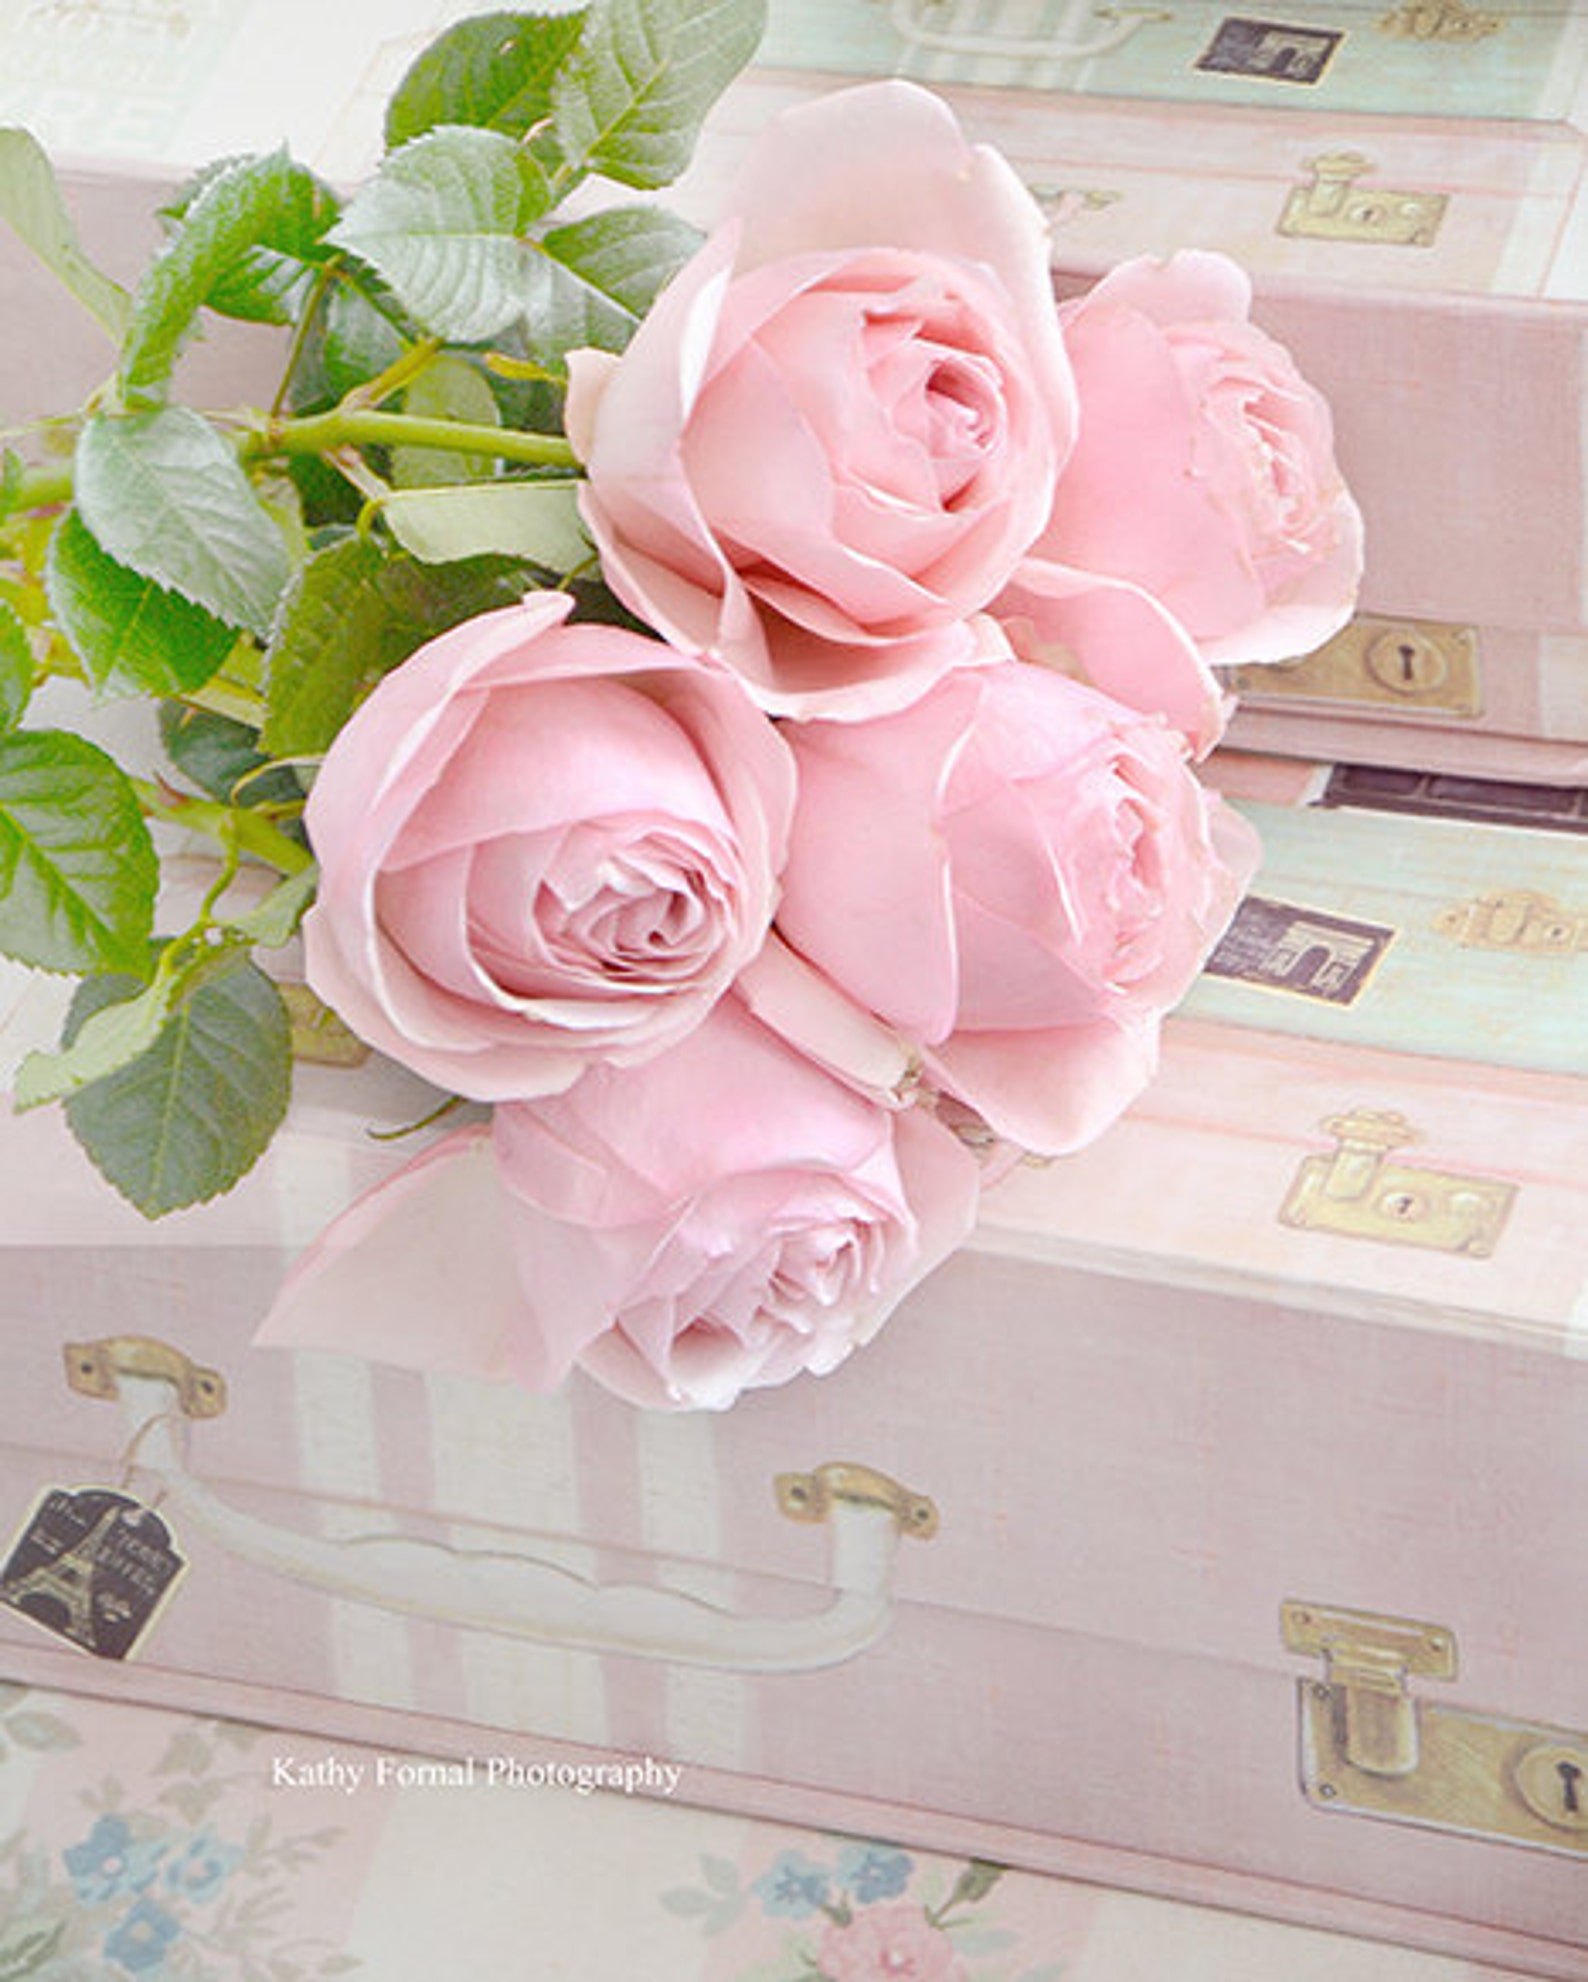 с днем рождения розовые розы фото